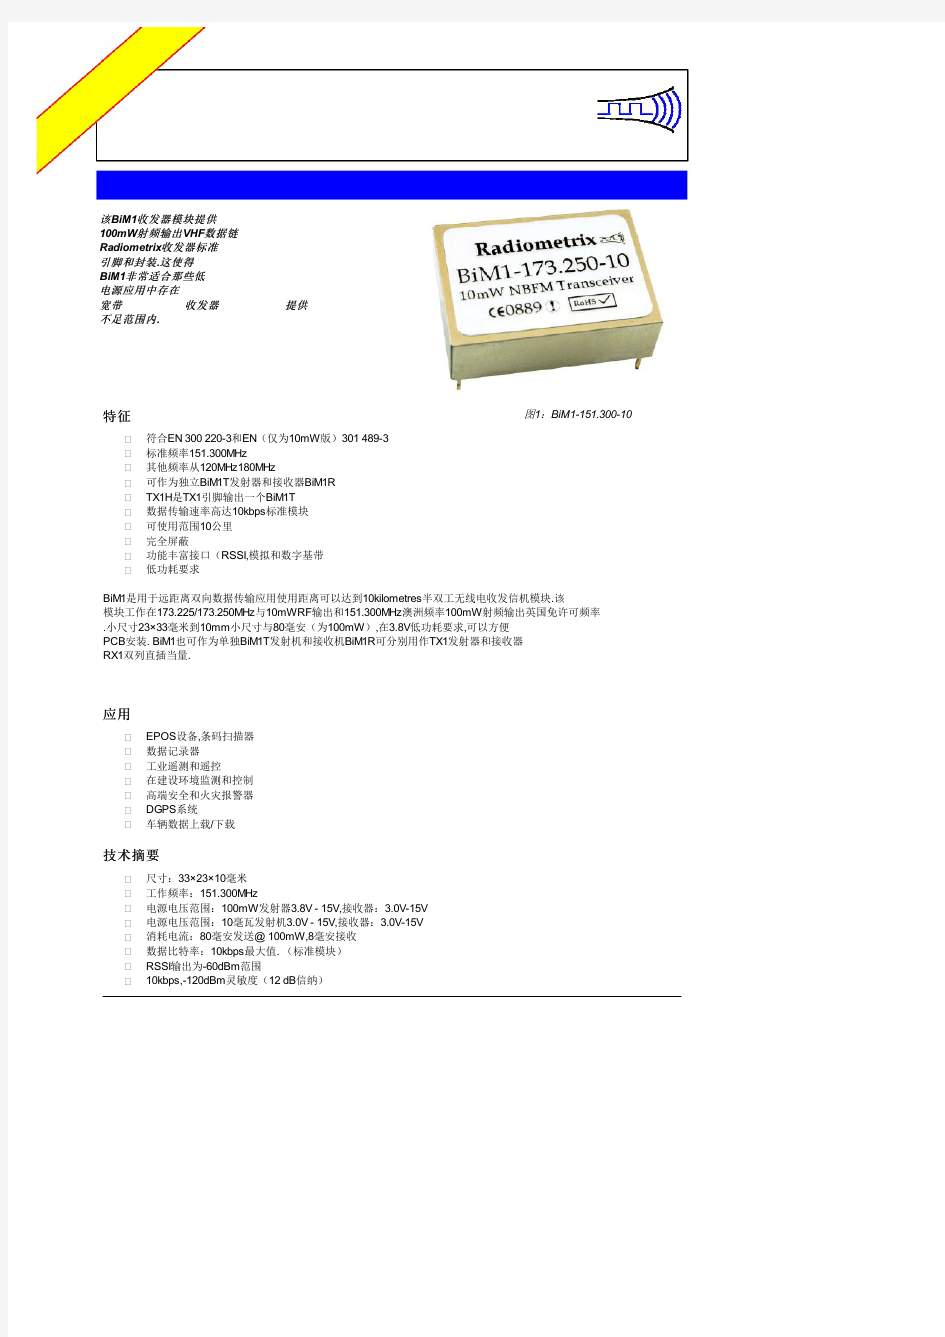 EN301489-3中文资料(List Unclassifed)中文数据手册「EasyDatasheet - 矽搜」